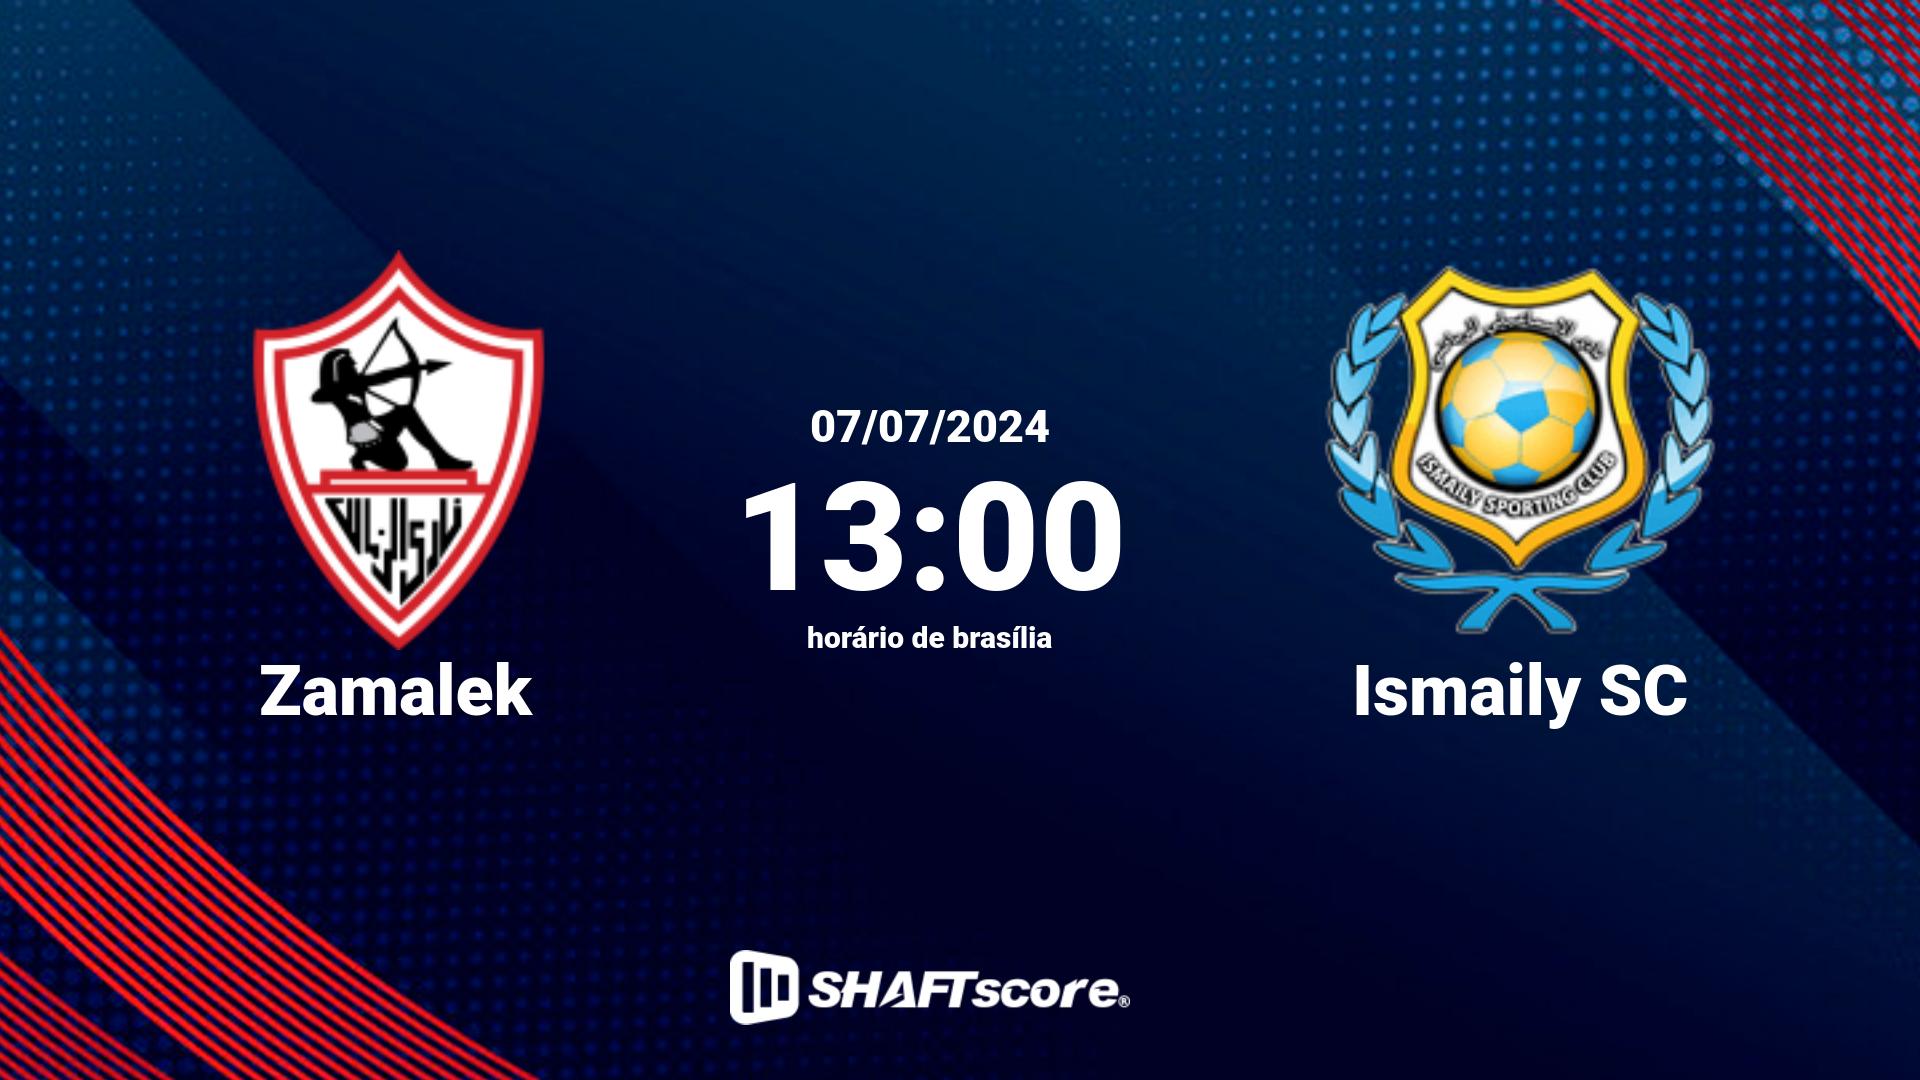 Estatísticas do jogo Zamalek vs Ismaily SC 07.07 13:00